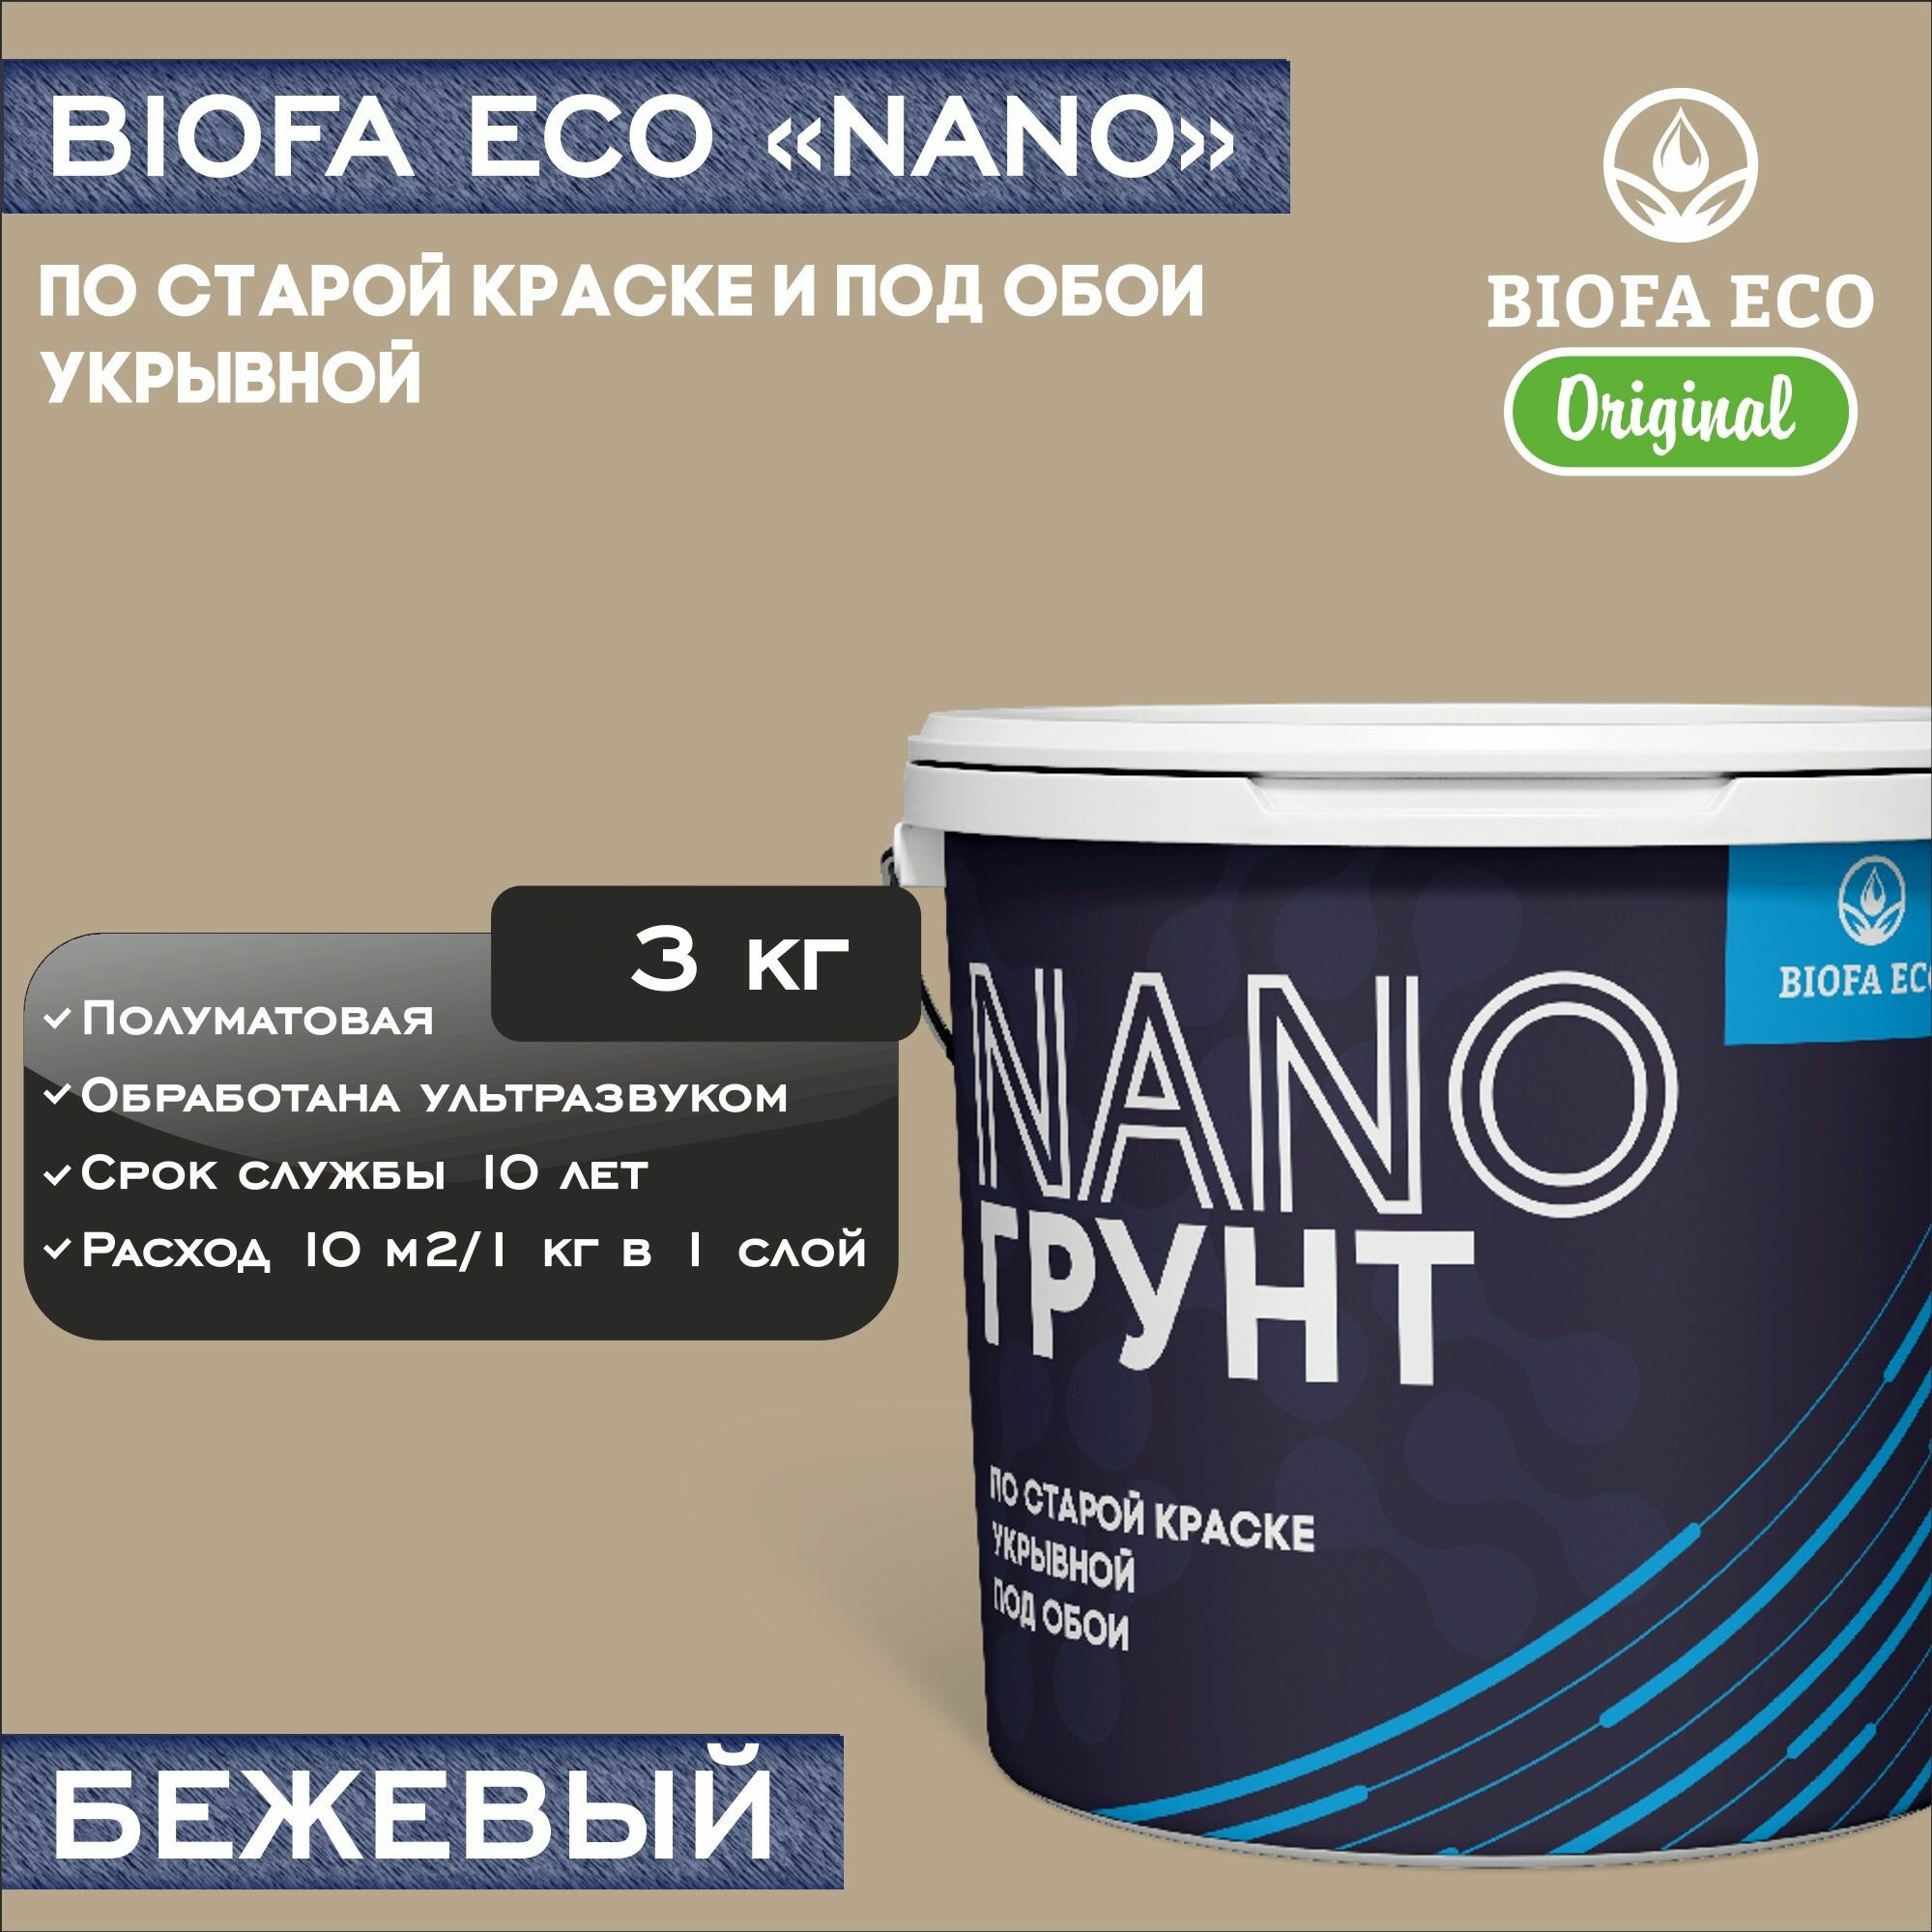 Грунт BIOFA ECO NANO укрывной под обои и по старой краске, адгезионный, цвет бежевый, 3 кг